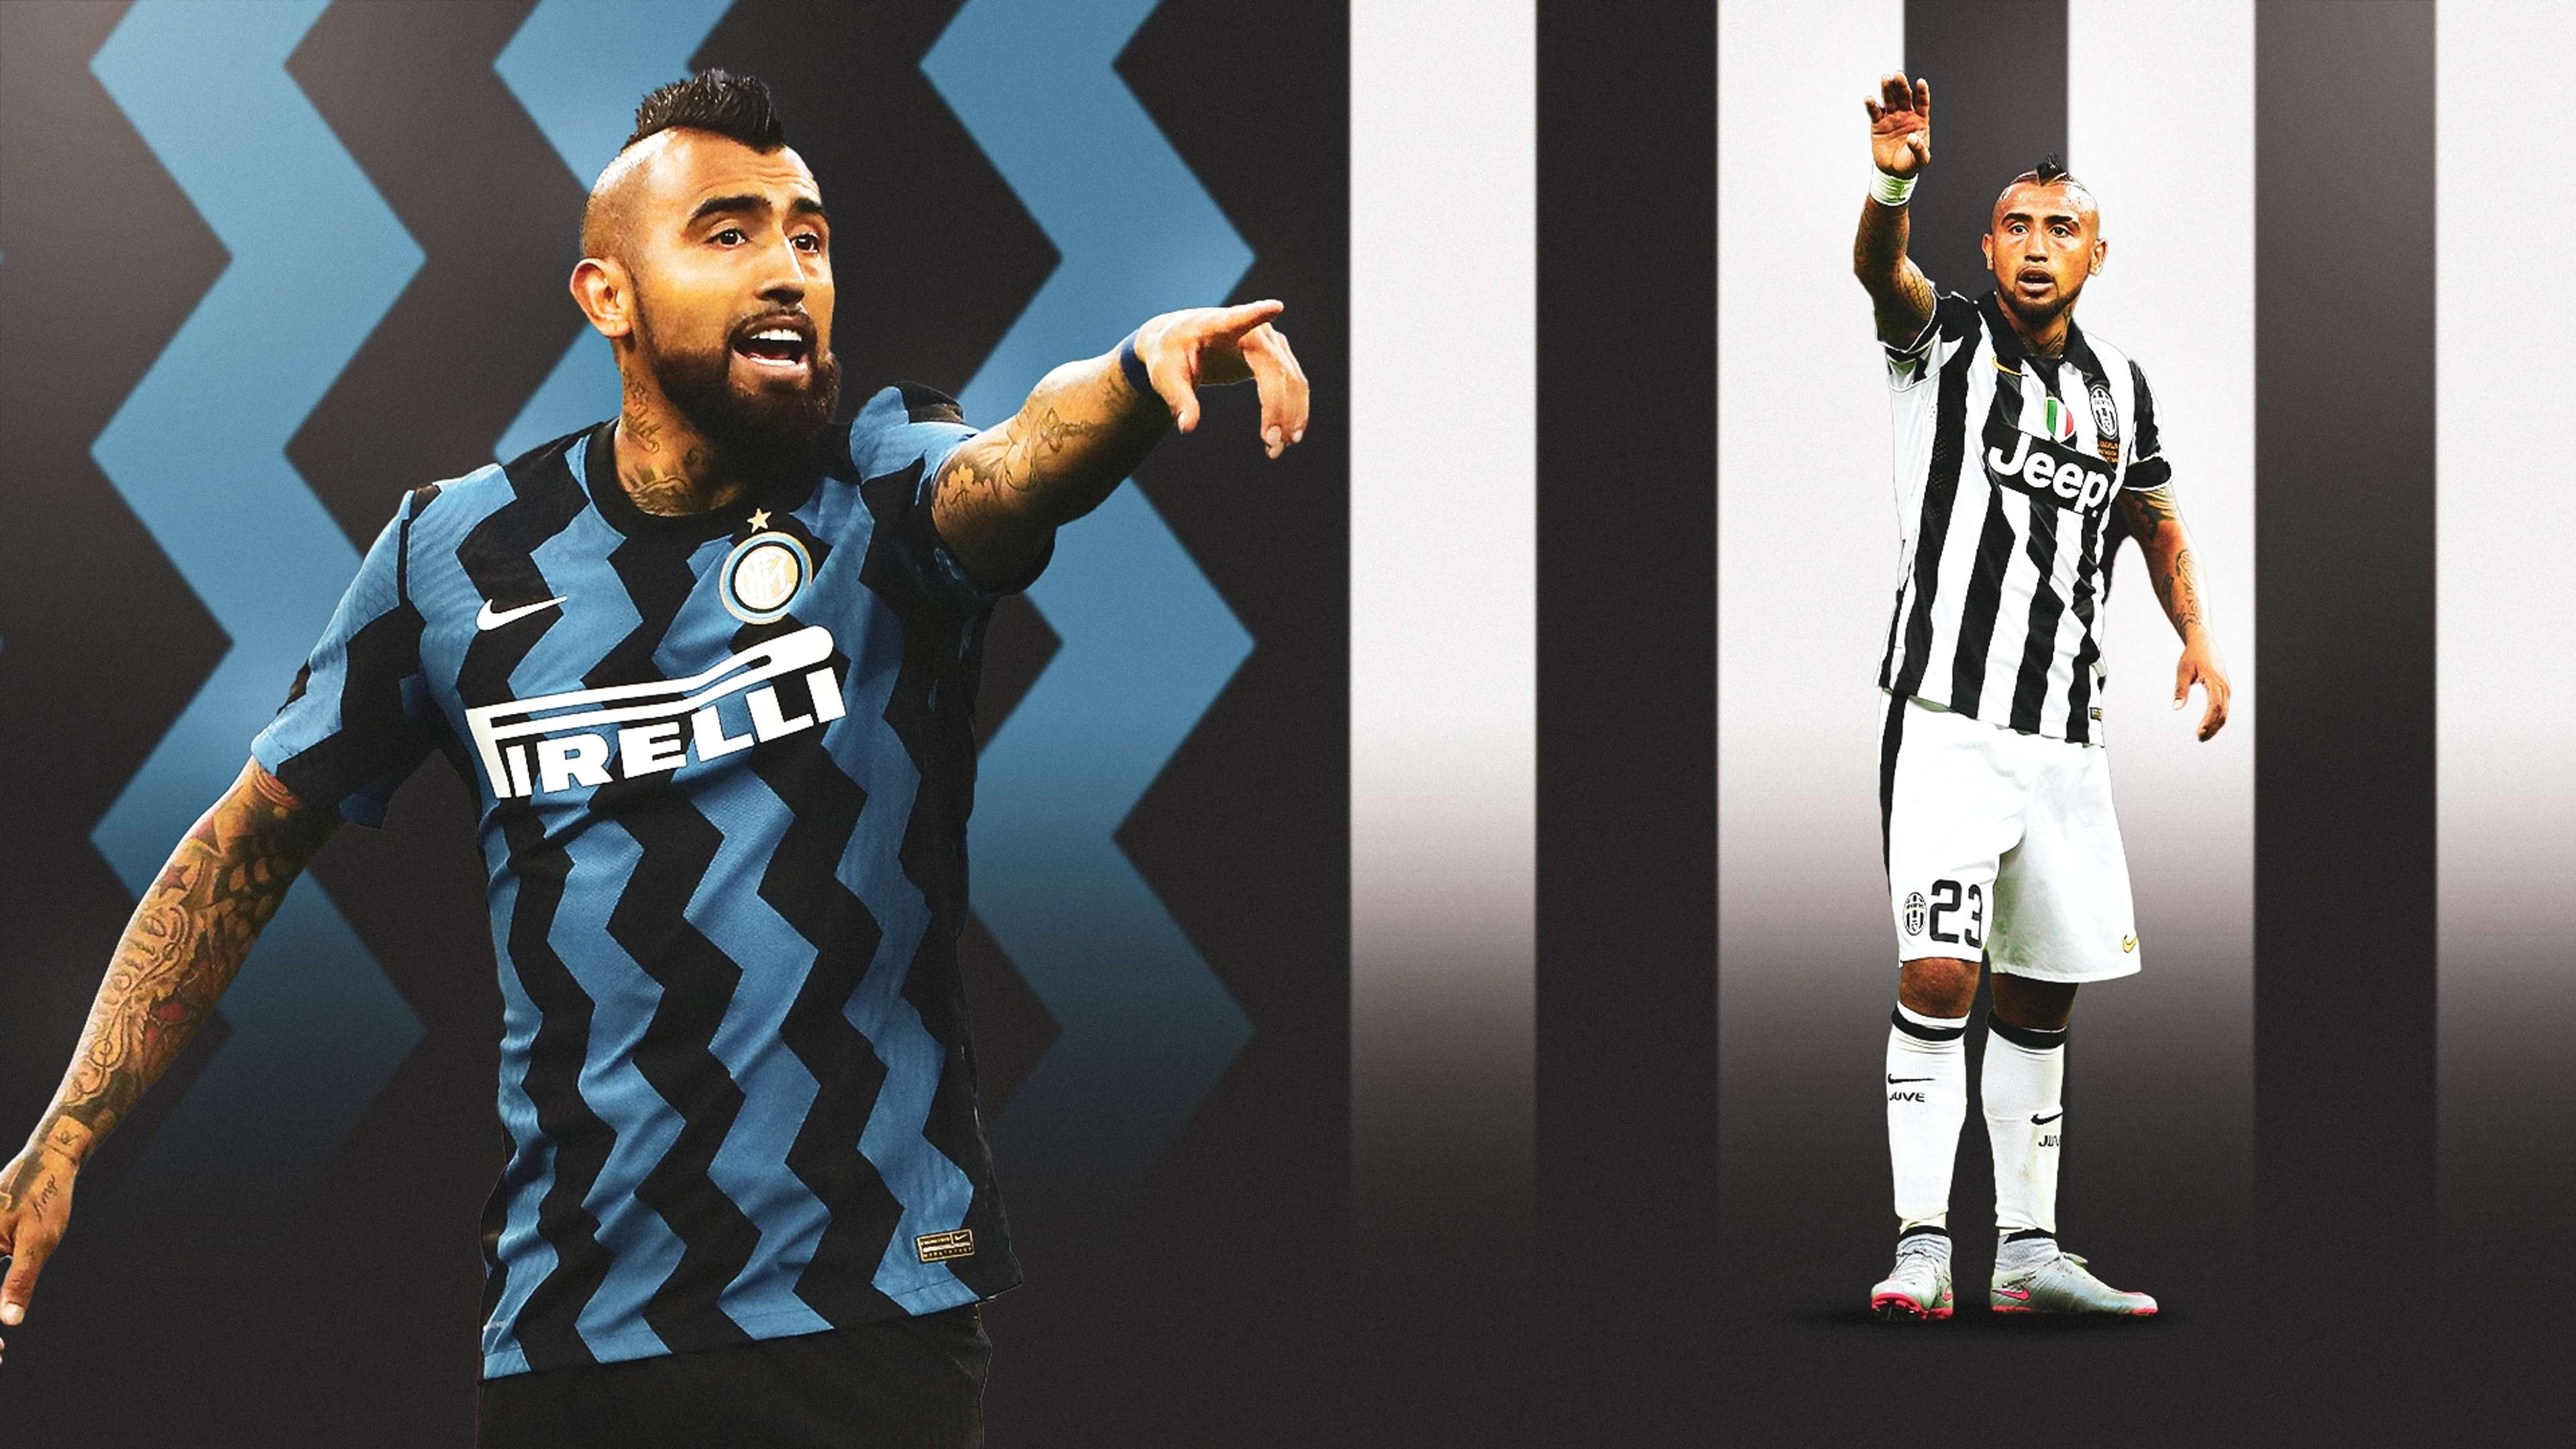 Vidal GFX Inter Juventus